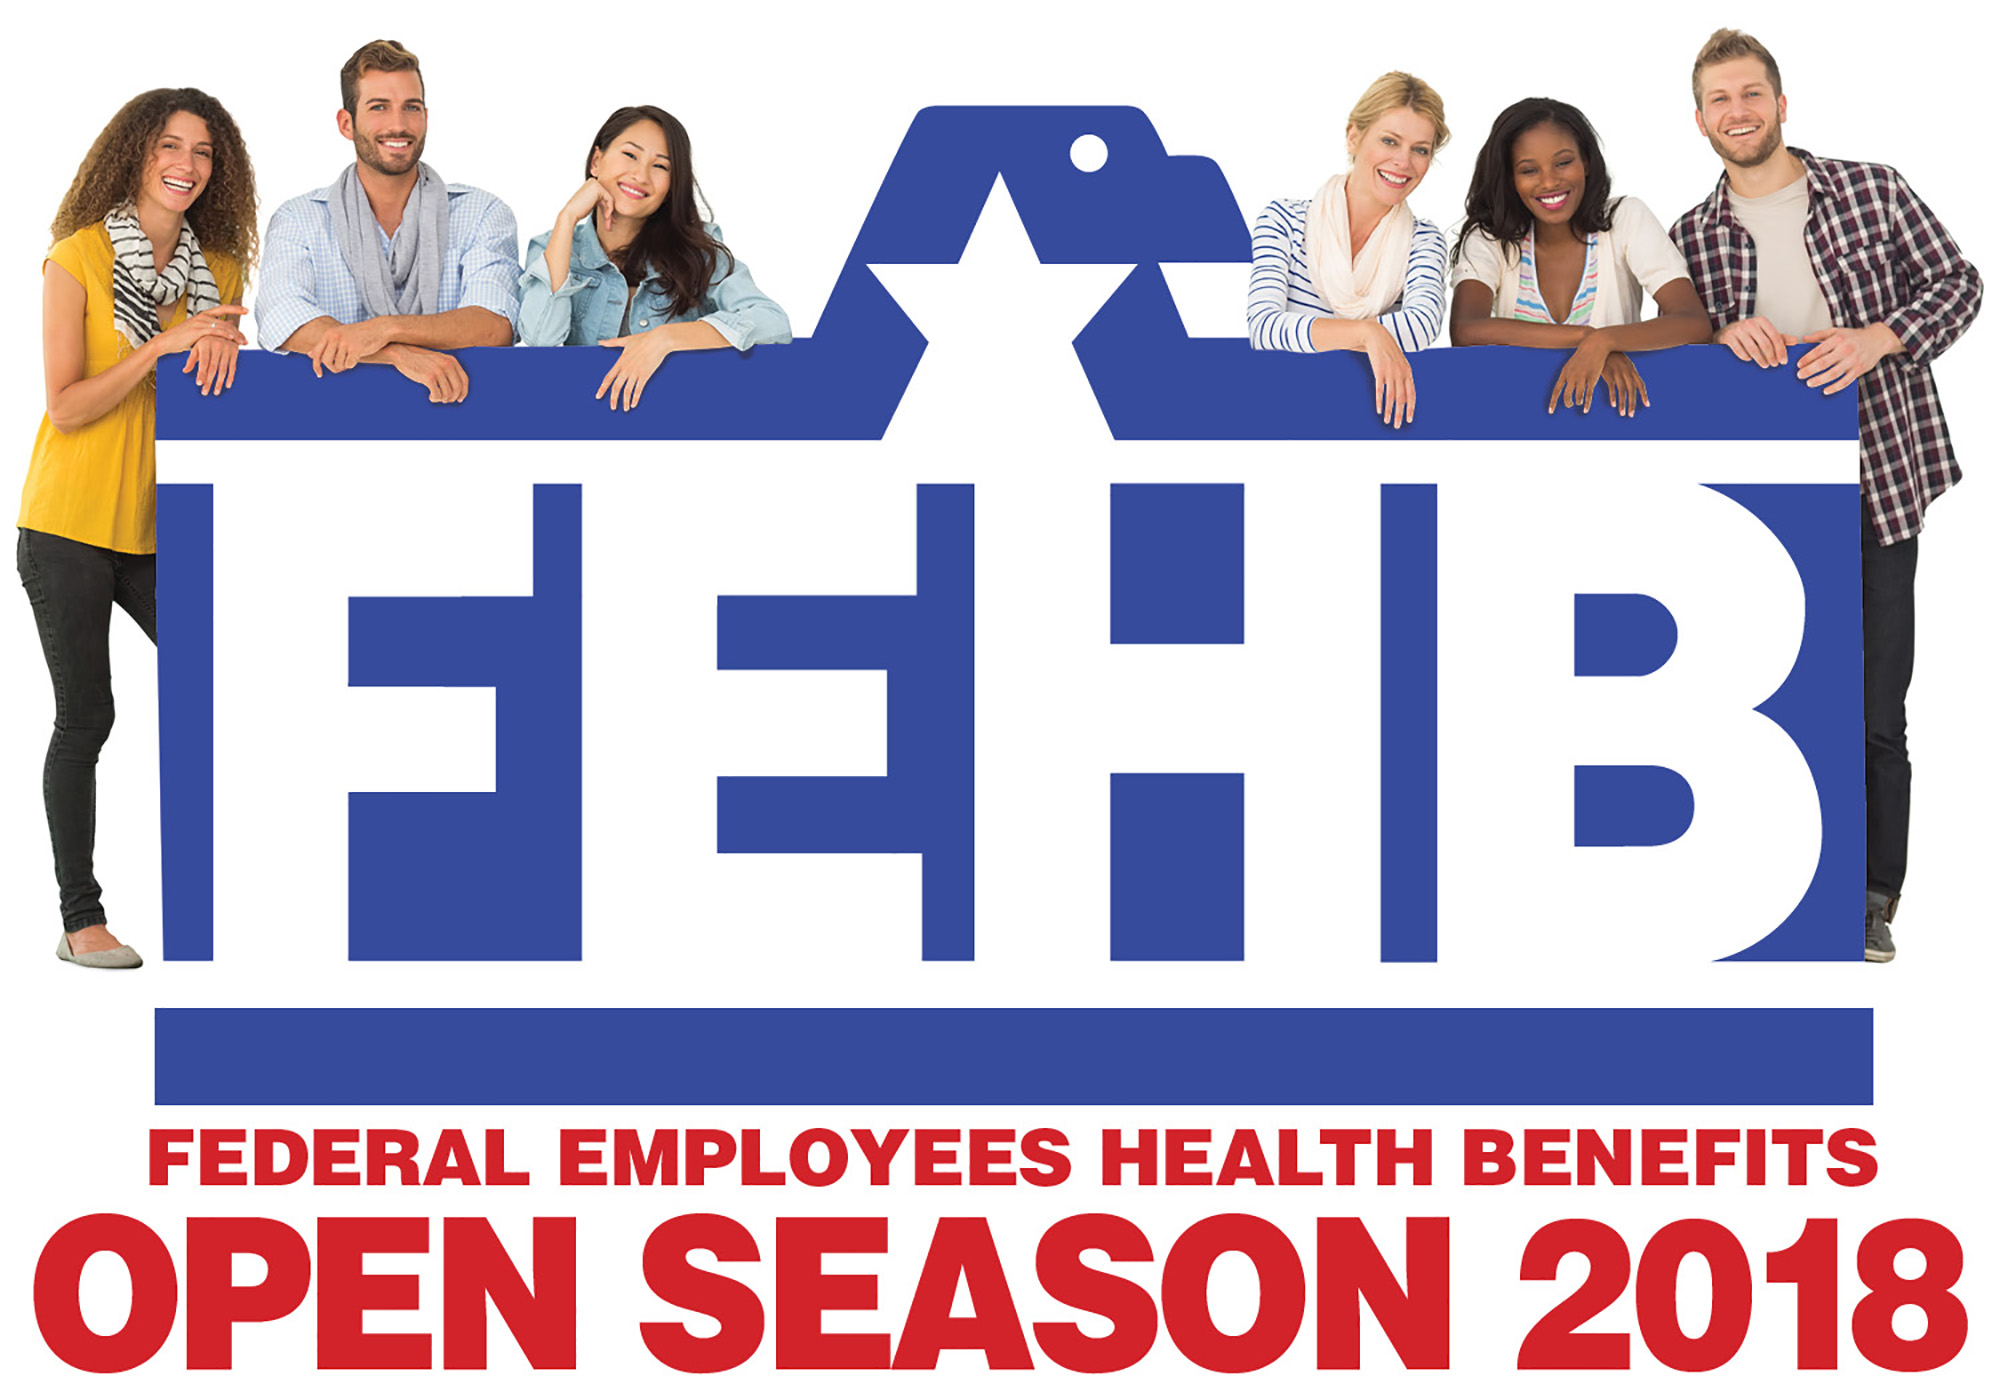 Federal civilians invited to FEHB open season health fair > Hill Air